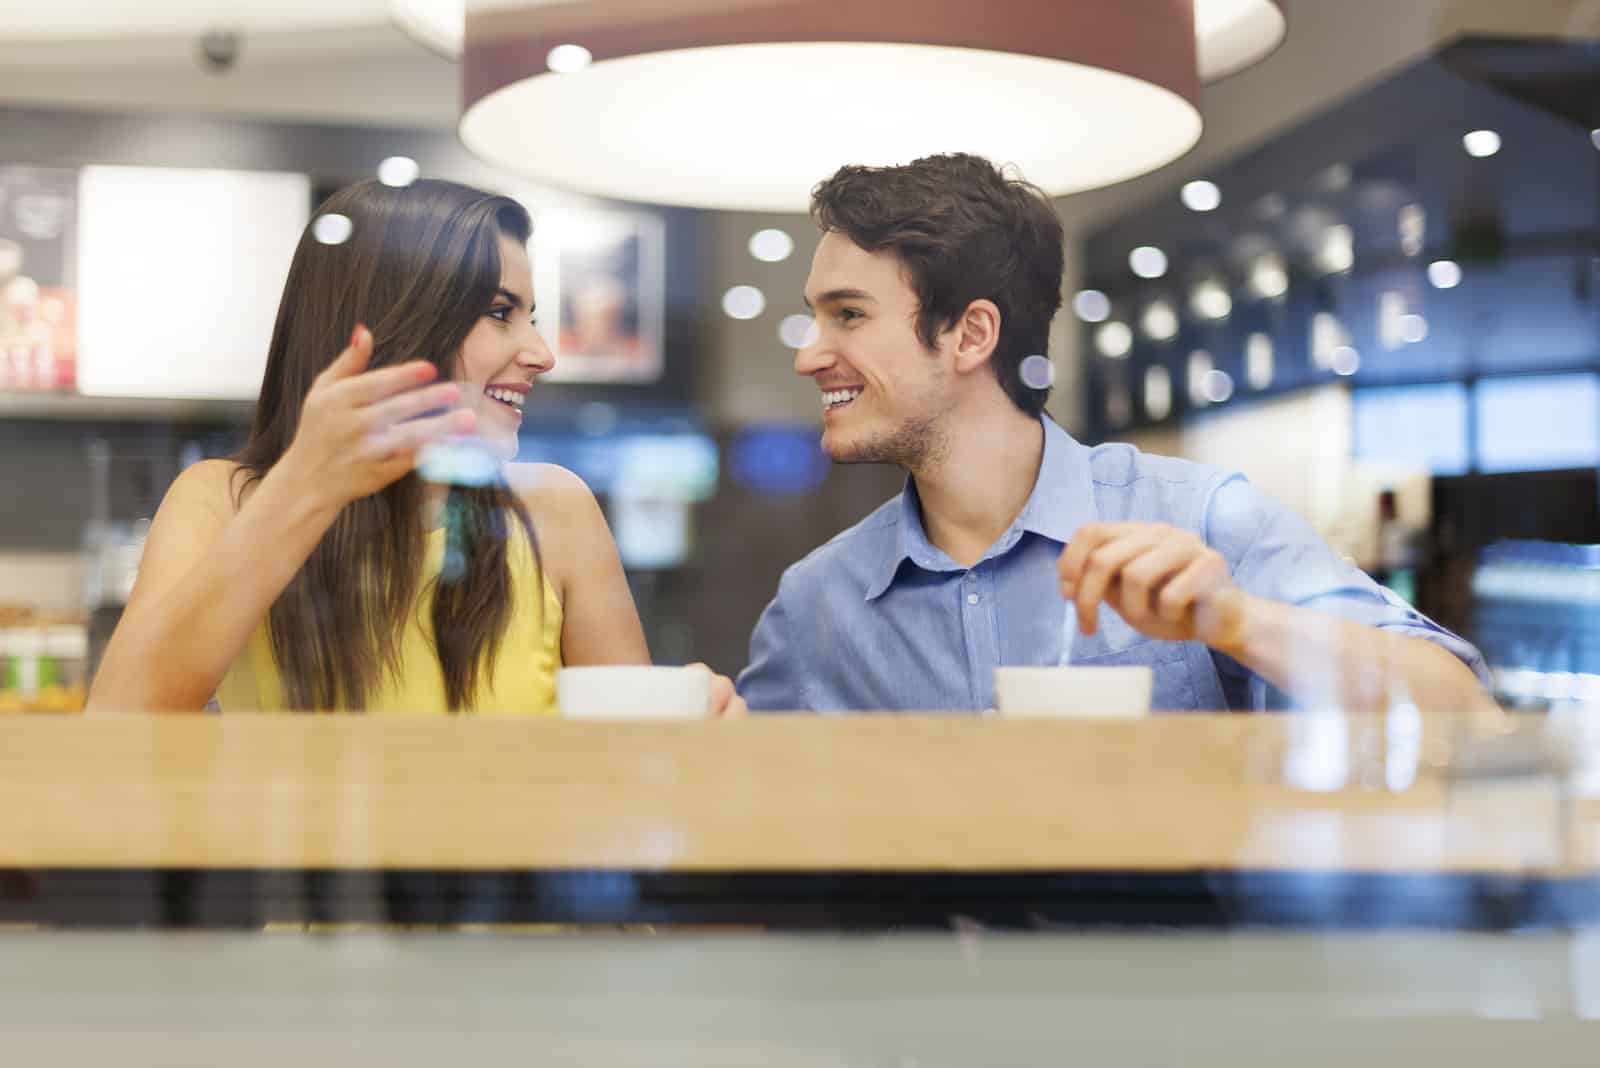 un homme et une femme sont assis dans un café et parlent autour d'un café